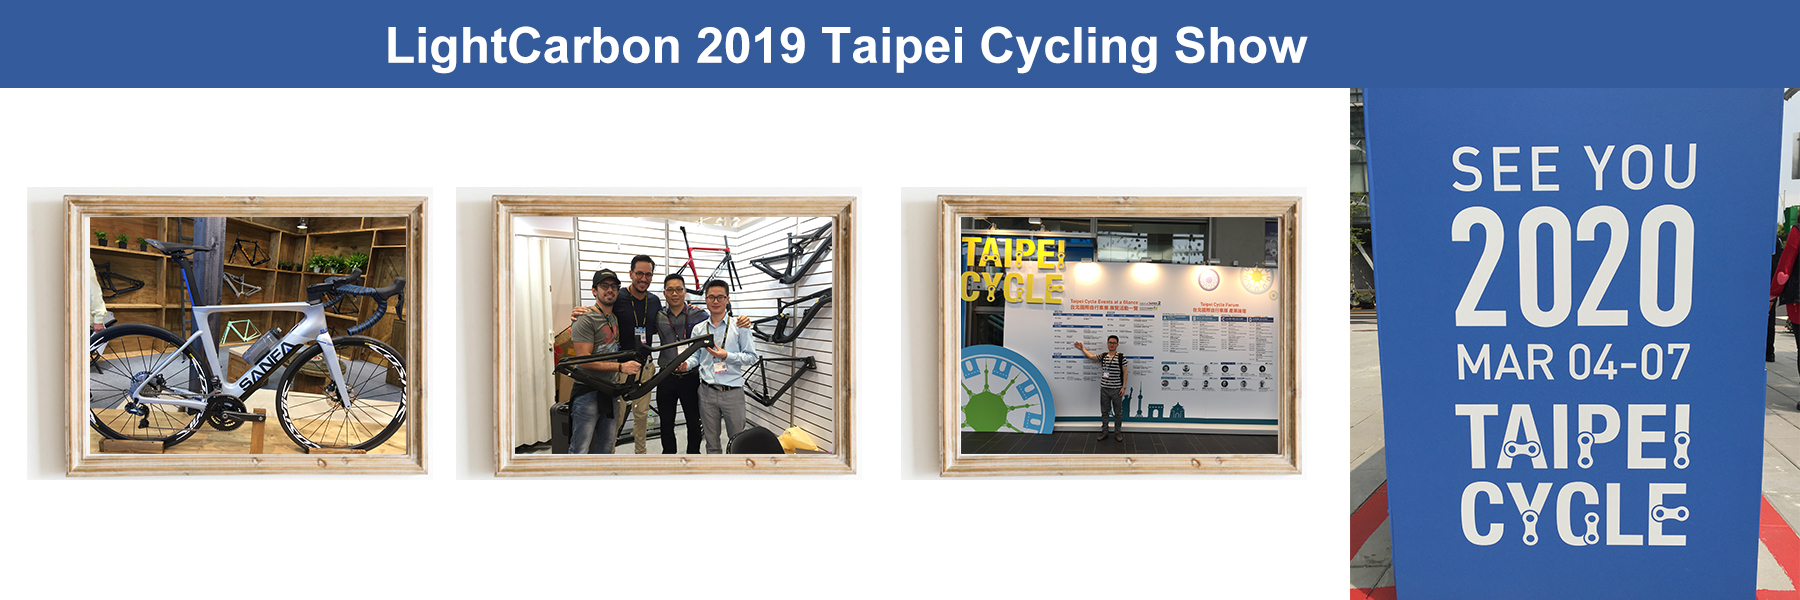 Mostra de ciclismo de Taipei 2019 lightcarbon